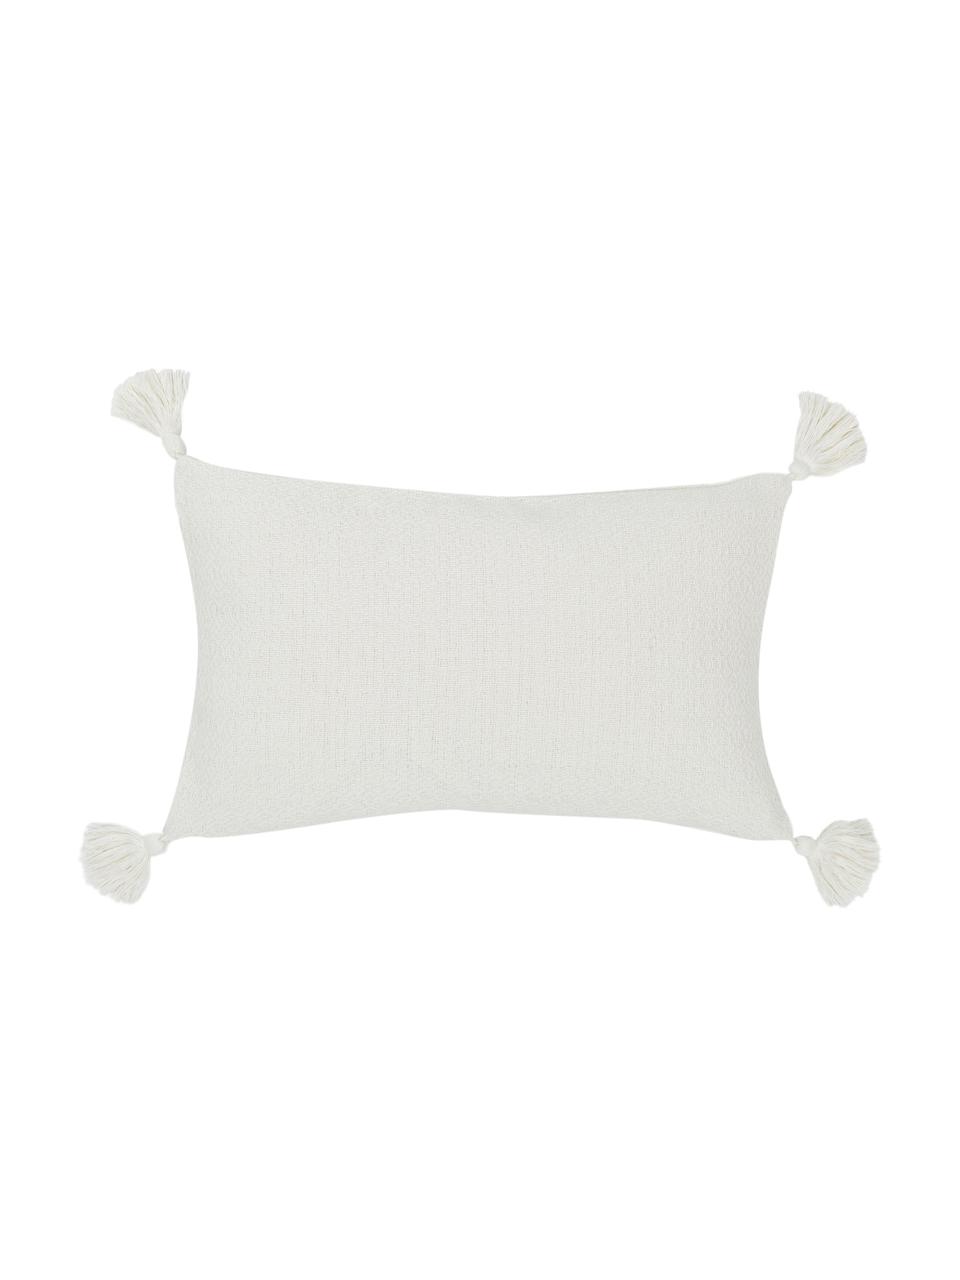 Poszewka na poduszkę z chwostami Lori, 100% bawełna, Biały, S 30 x D 50 cm